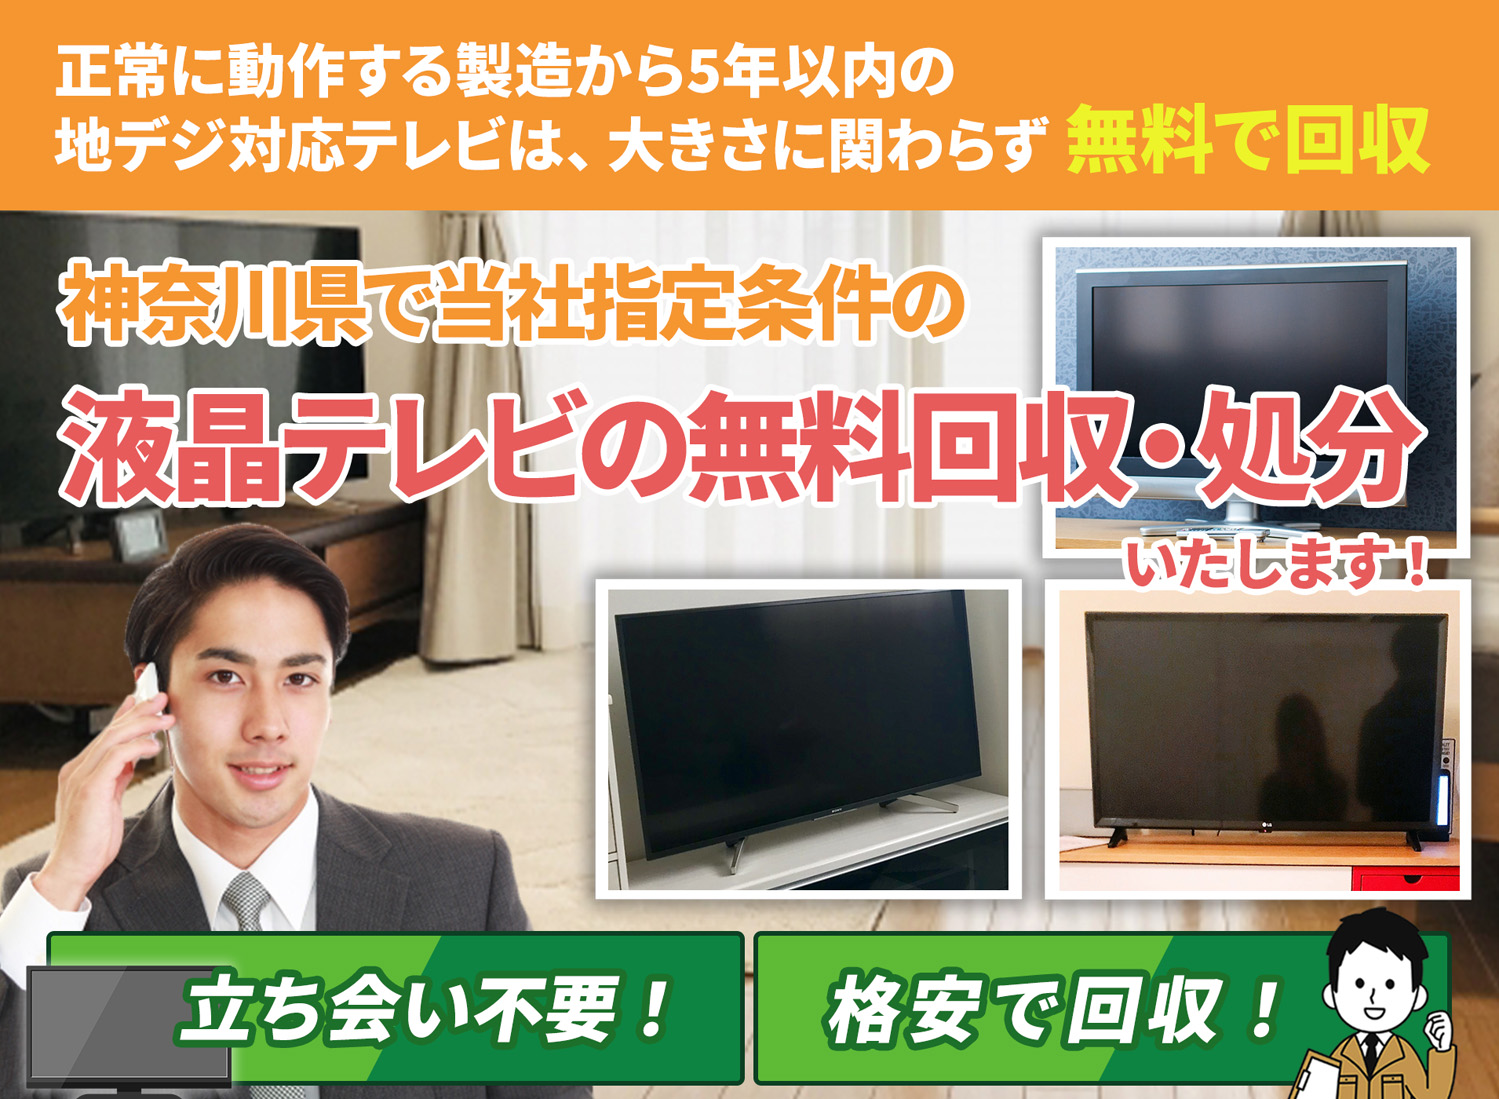 神奈川県で丁寧に「お客様と寄り添う」液晶テレビ無料回収処分隊の液晶テレビ無料回収サービス